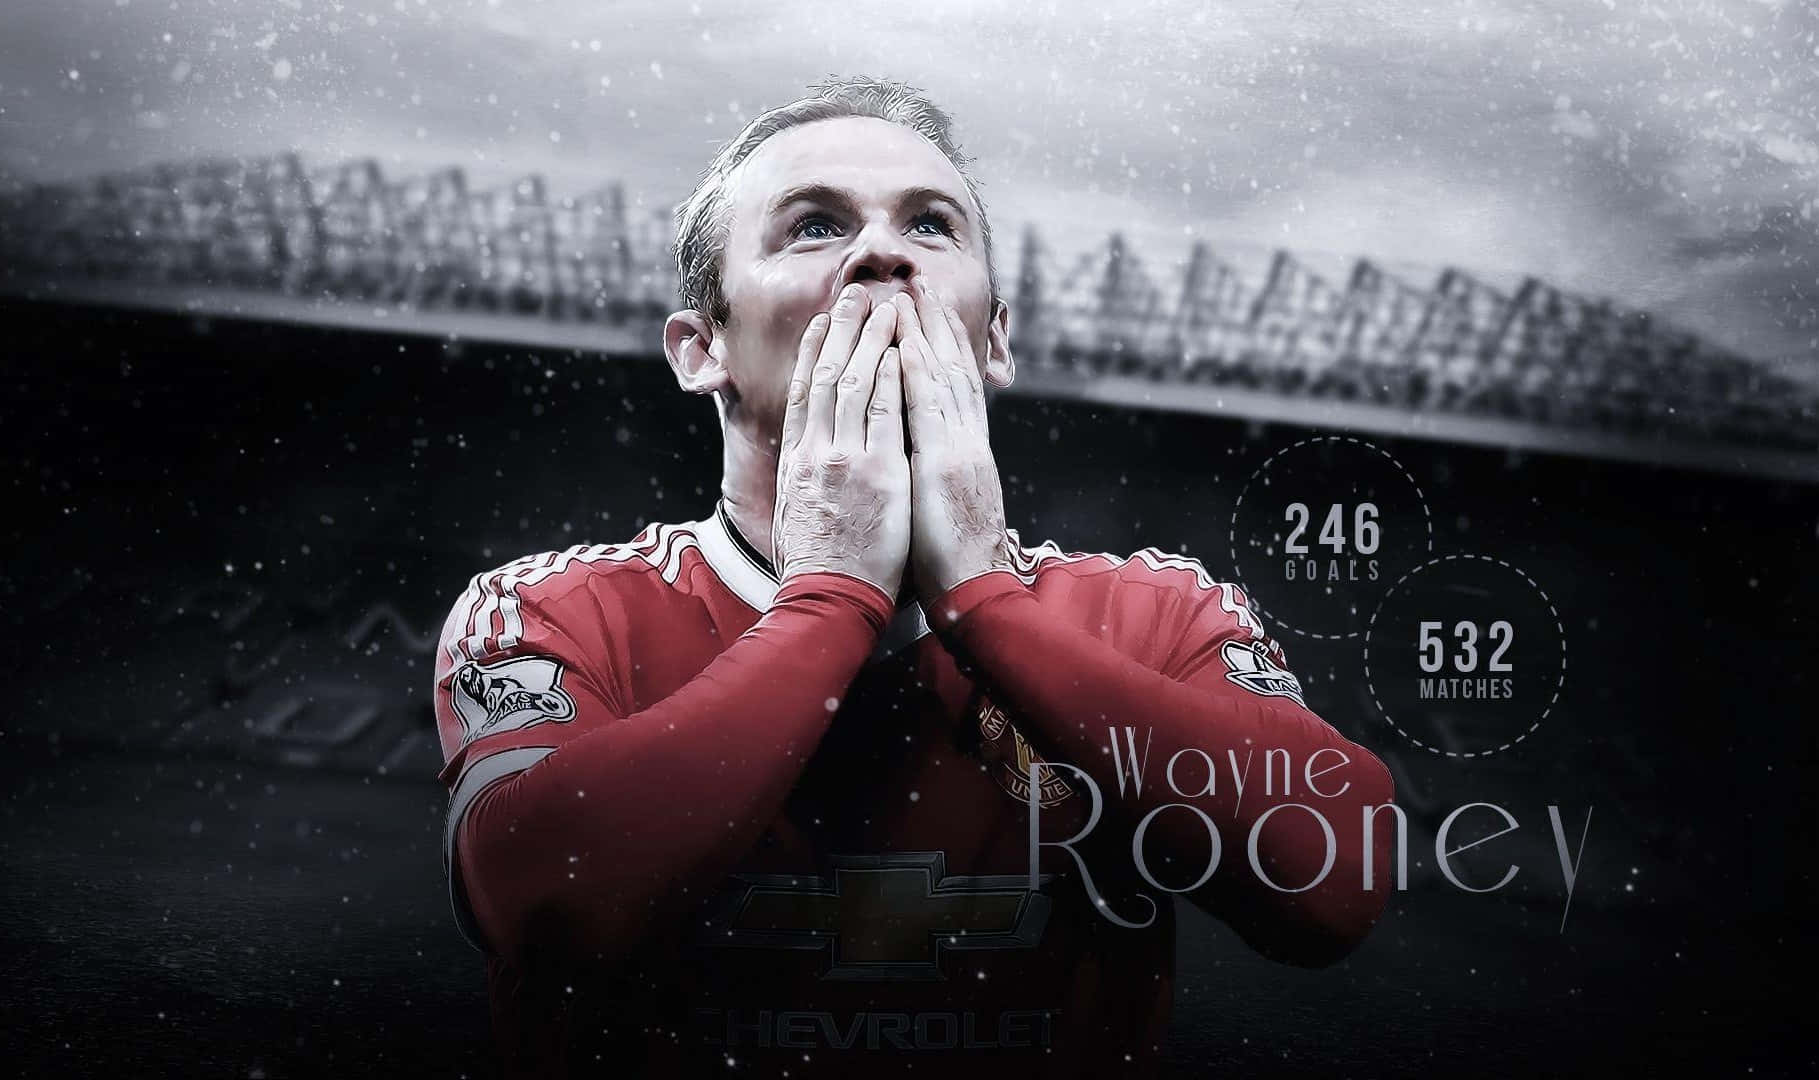 Ilsupercampione Di Calcio Wayne Rooney Festeggia La Sua Ultima Vittoria